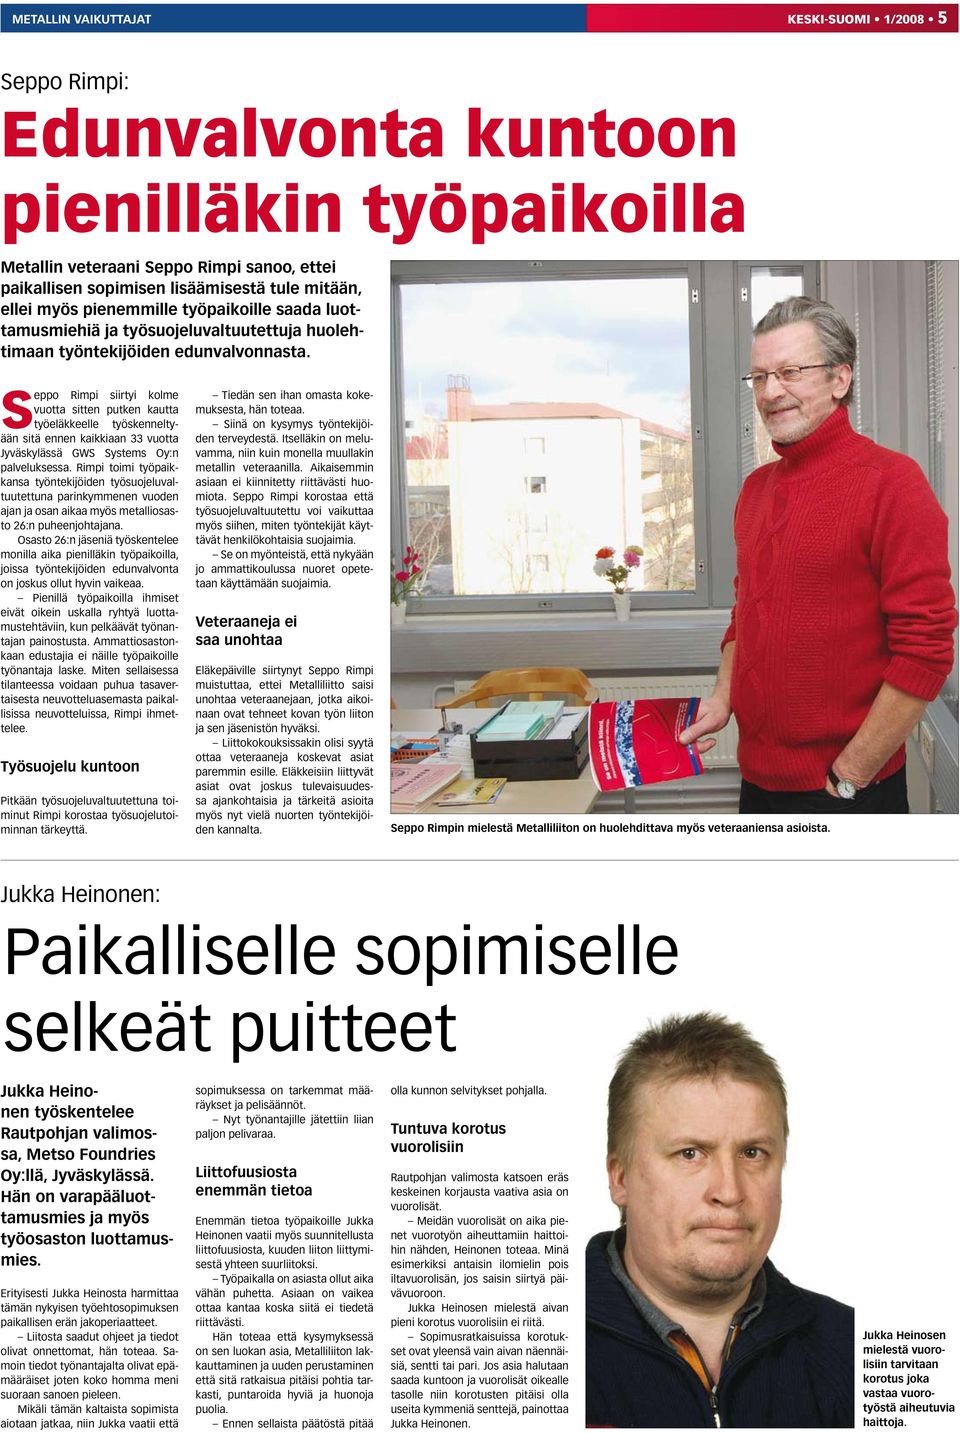 Seppo Rimpi siirtyi kolme vuotta sitten putken kautta työeläkkeelle työskenneltyään sitä ennen kaikkiaan 33 vuotta Jyväskylässä GWS Systems Oy:n palveluksessa.